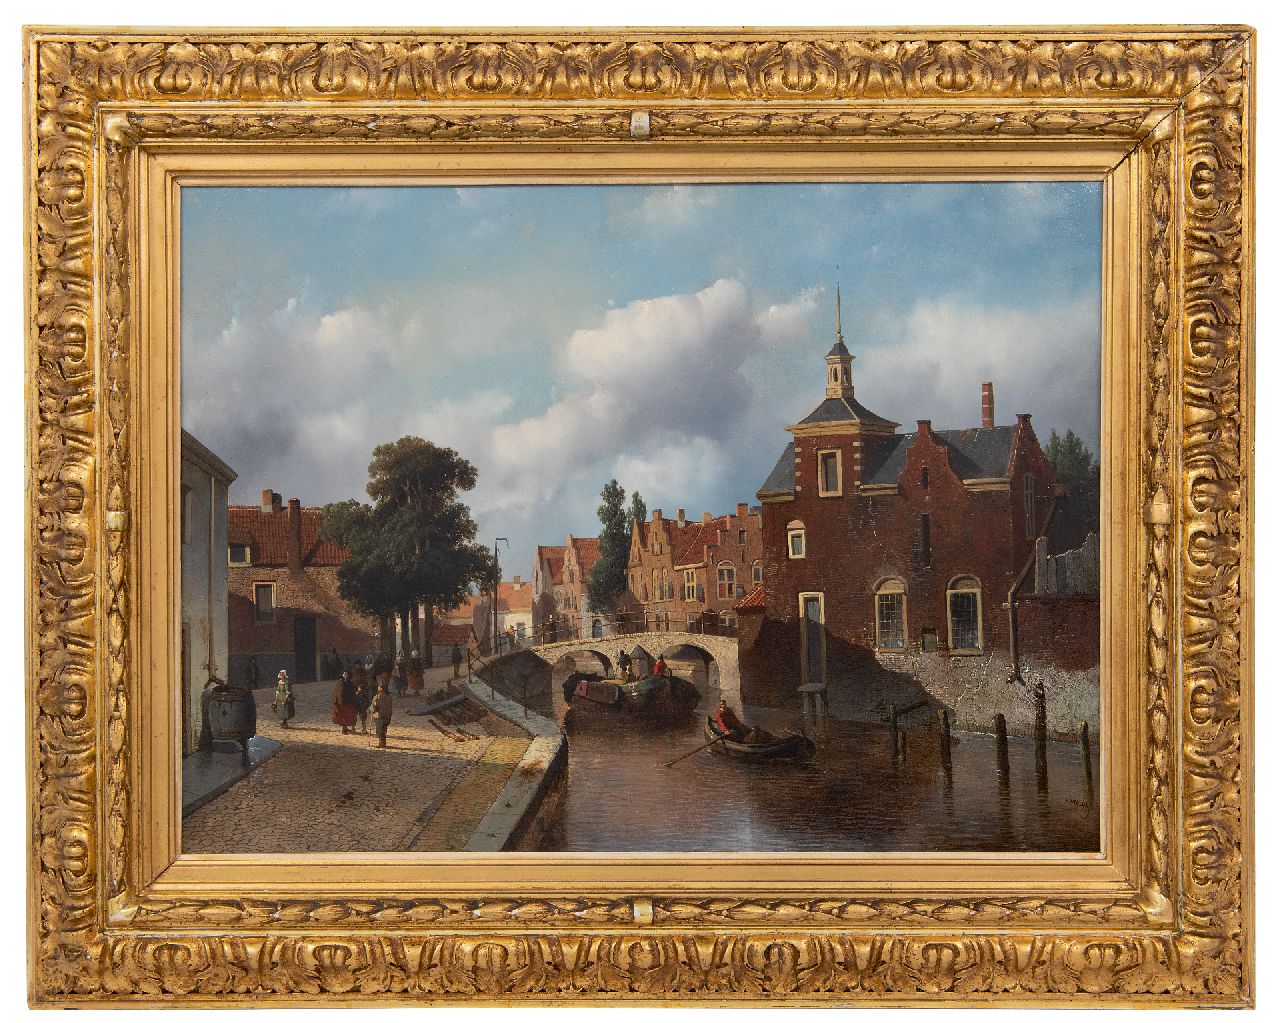 Vrolijk J.A.  | Jacobus 'Adriaan' Vrolijk | Schilderijen te koop aangeboden | Hollandse stadsgracht met scheepvaart en figuren, olieverf op paneel 38,6 x 52,4 cm, gesigneerd rechtsonder